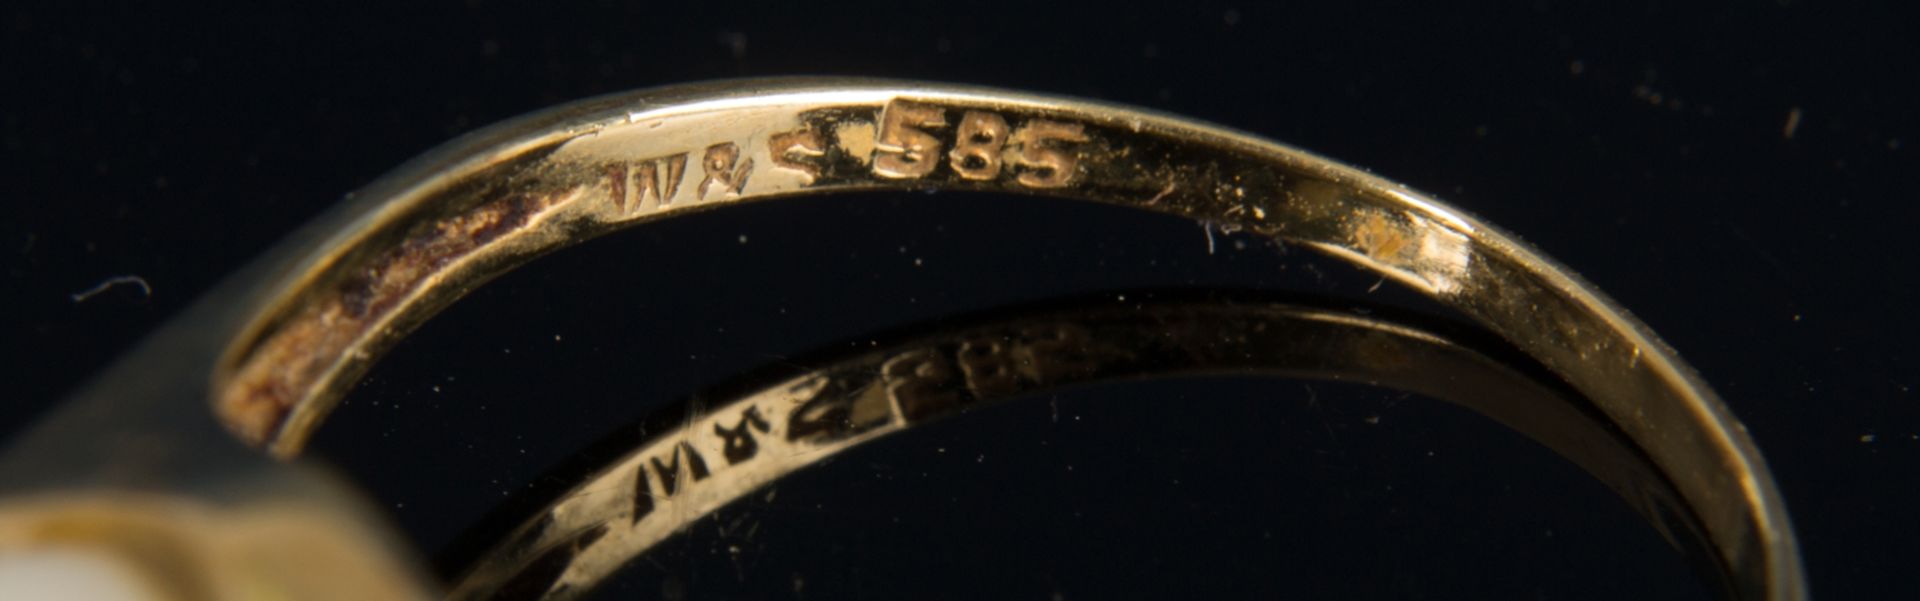 Stylischer 585er Gelbgold Damenring mit Perle besetzt. Ringdurchmesser ca. 20 mm. !960/ 70er - Image 3 of 4